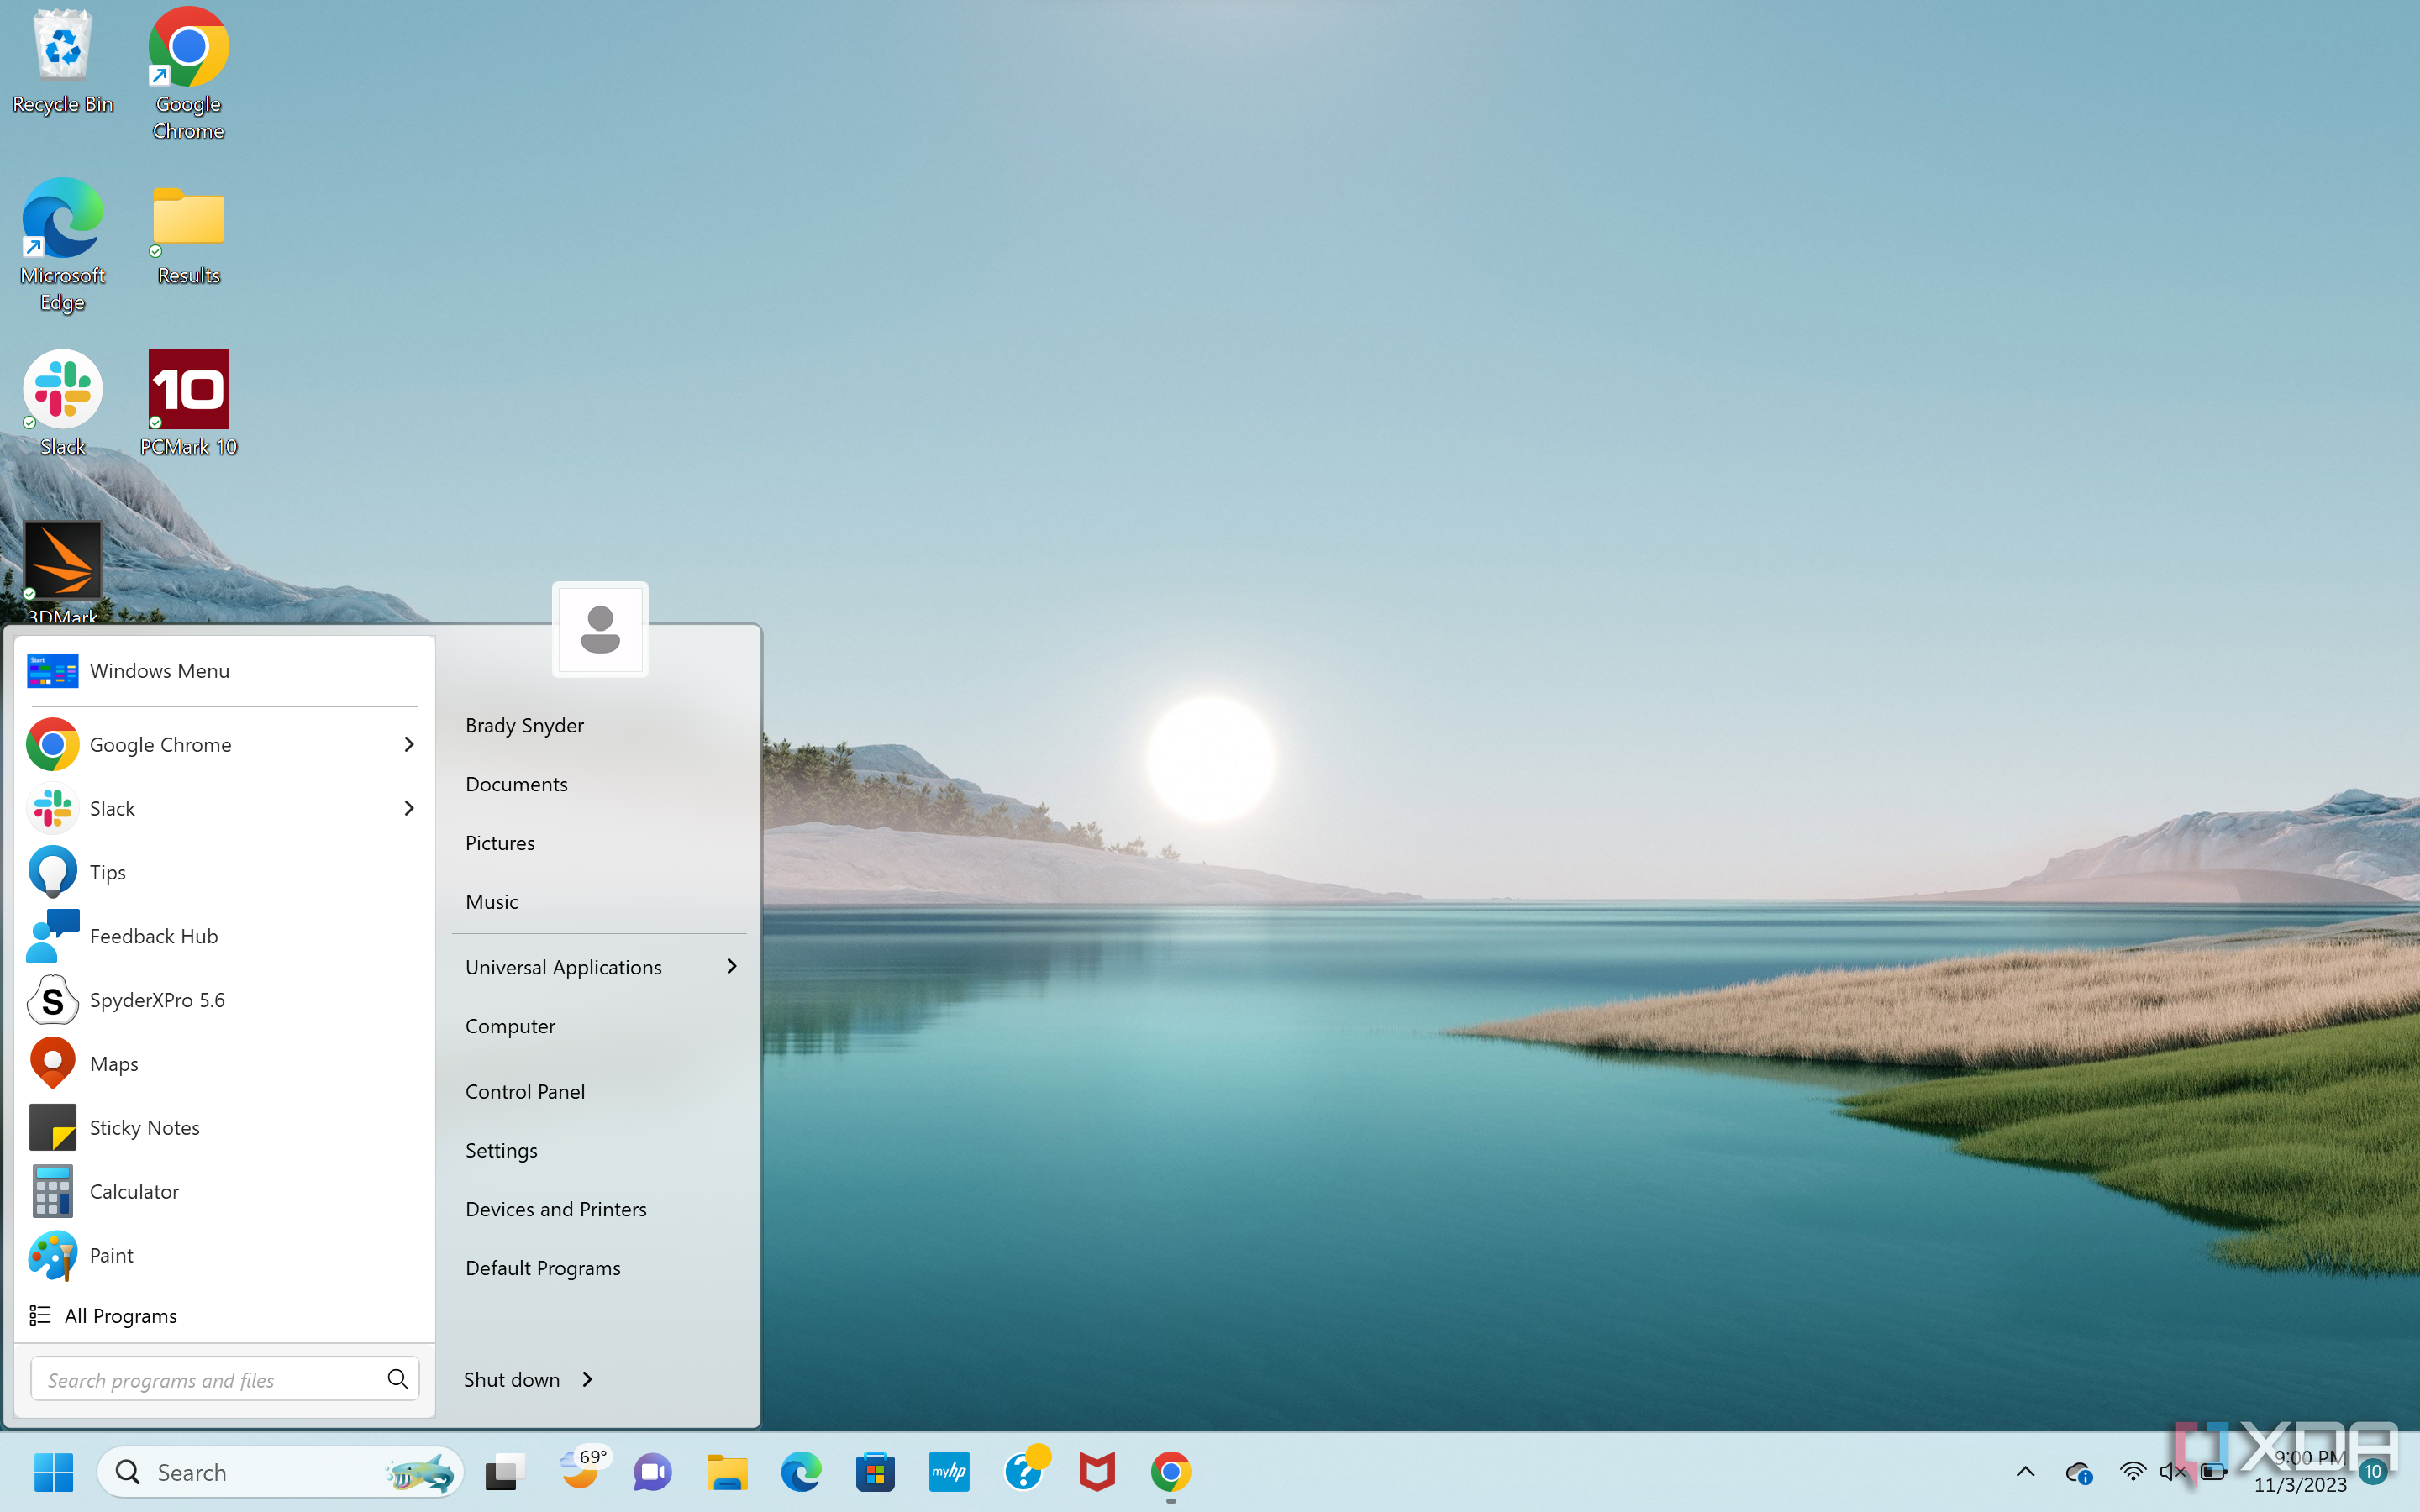 Windows 7 style start menu on a Windows 11 PC.